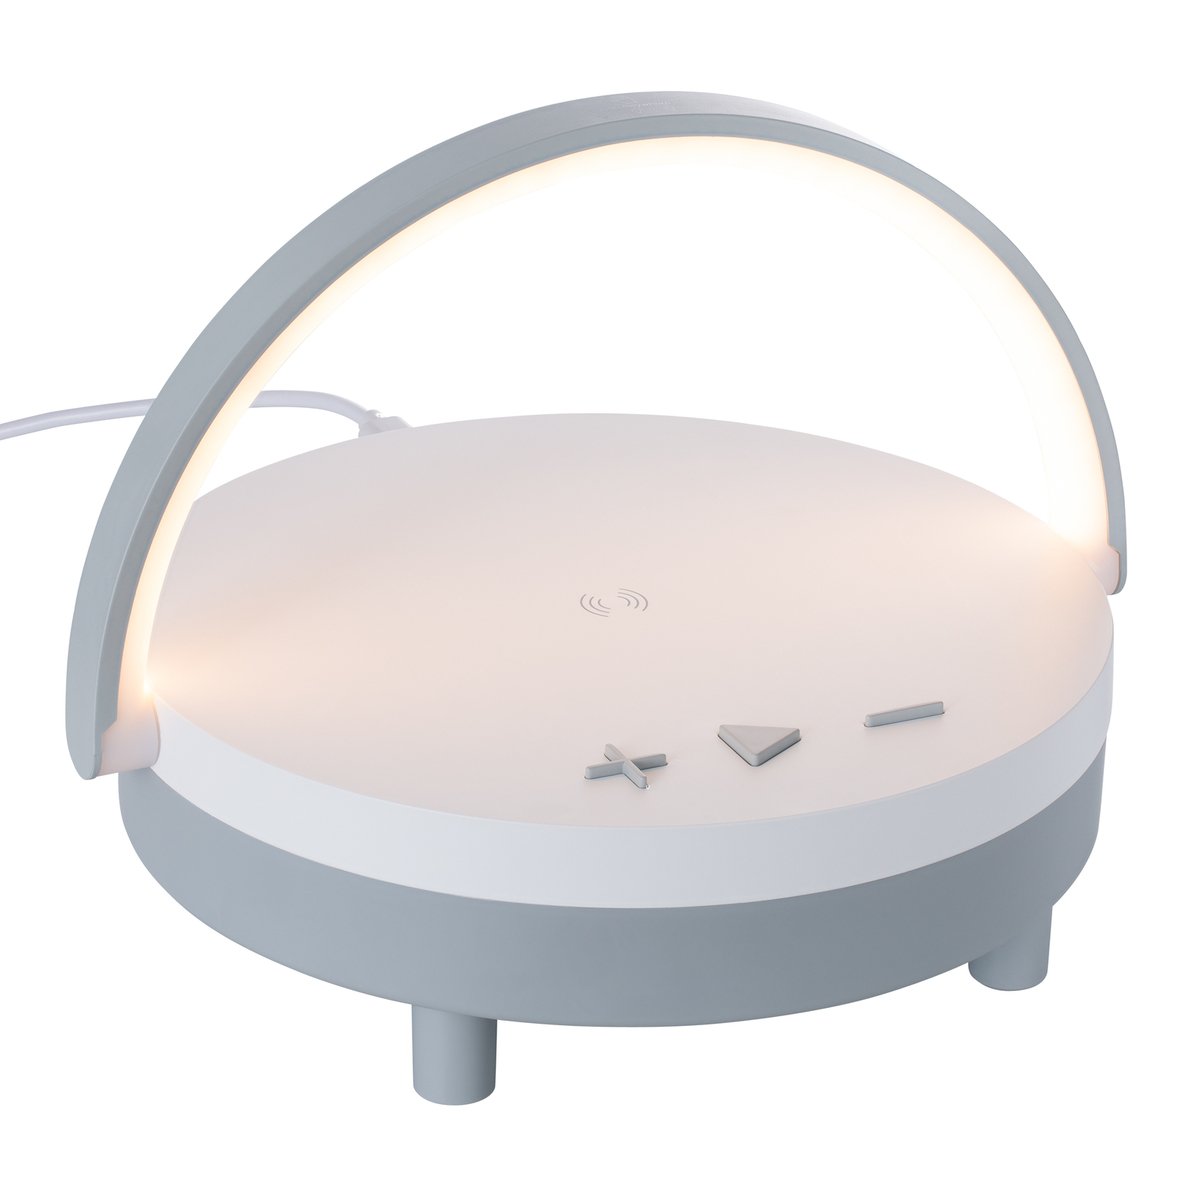 Wireless Lautsprecher inkl 15 Watt Wireless Charger mit Licht REEVES-BOURVILLE weiß